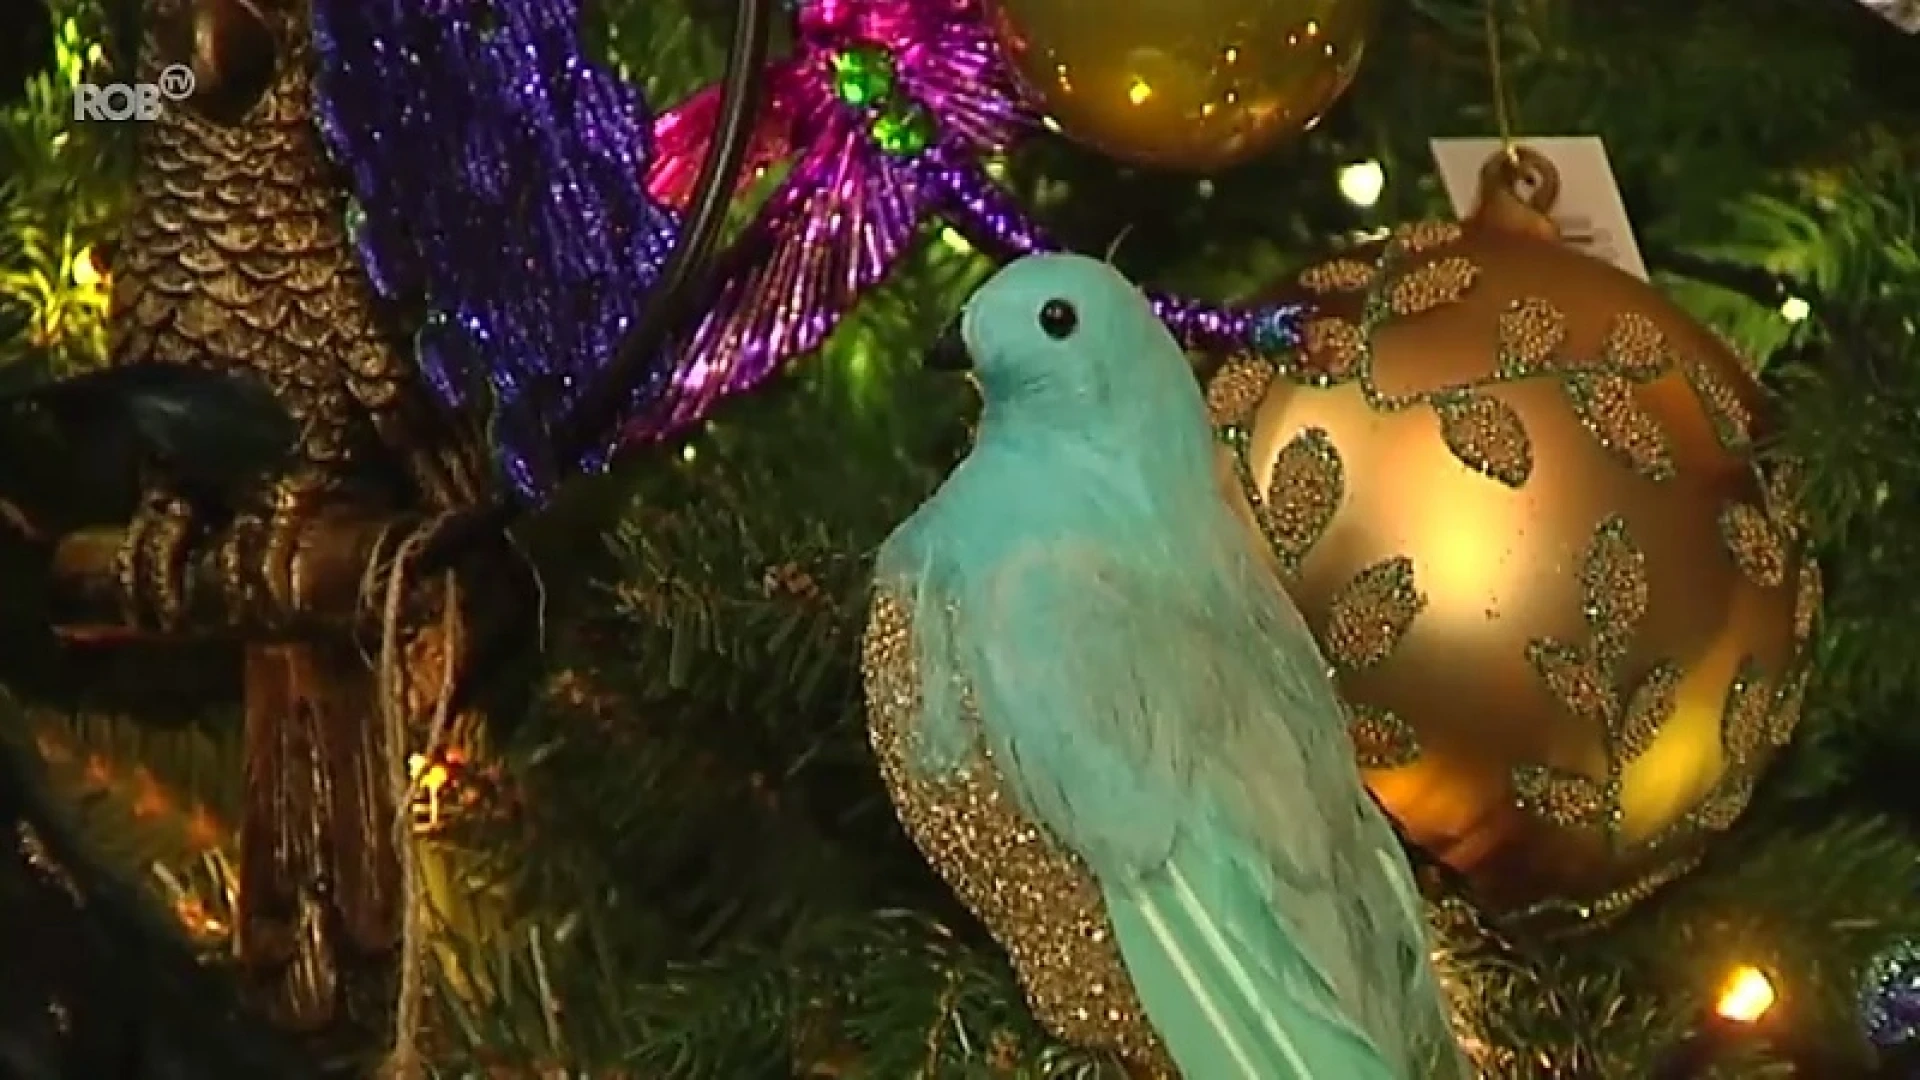 Bij pop-up winkel Woauw in Aarschot pluk je je kerstdecoratie zelf uit de bomen